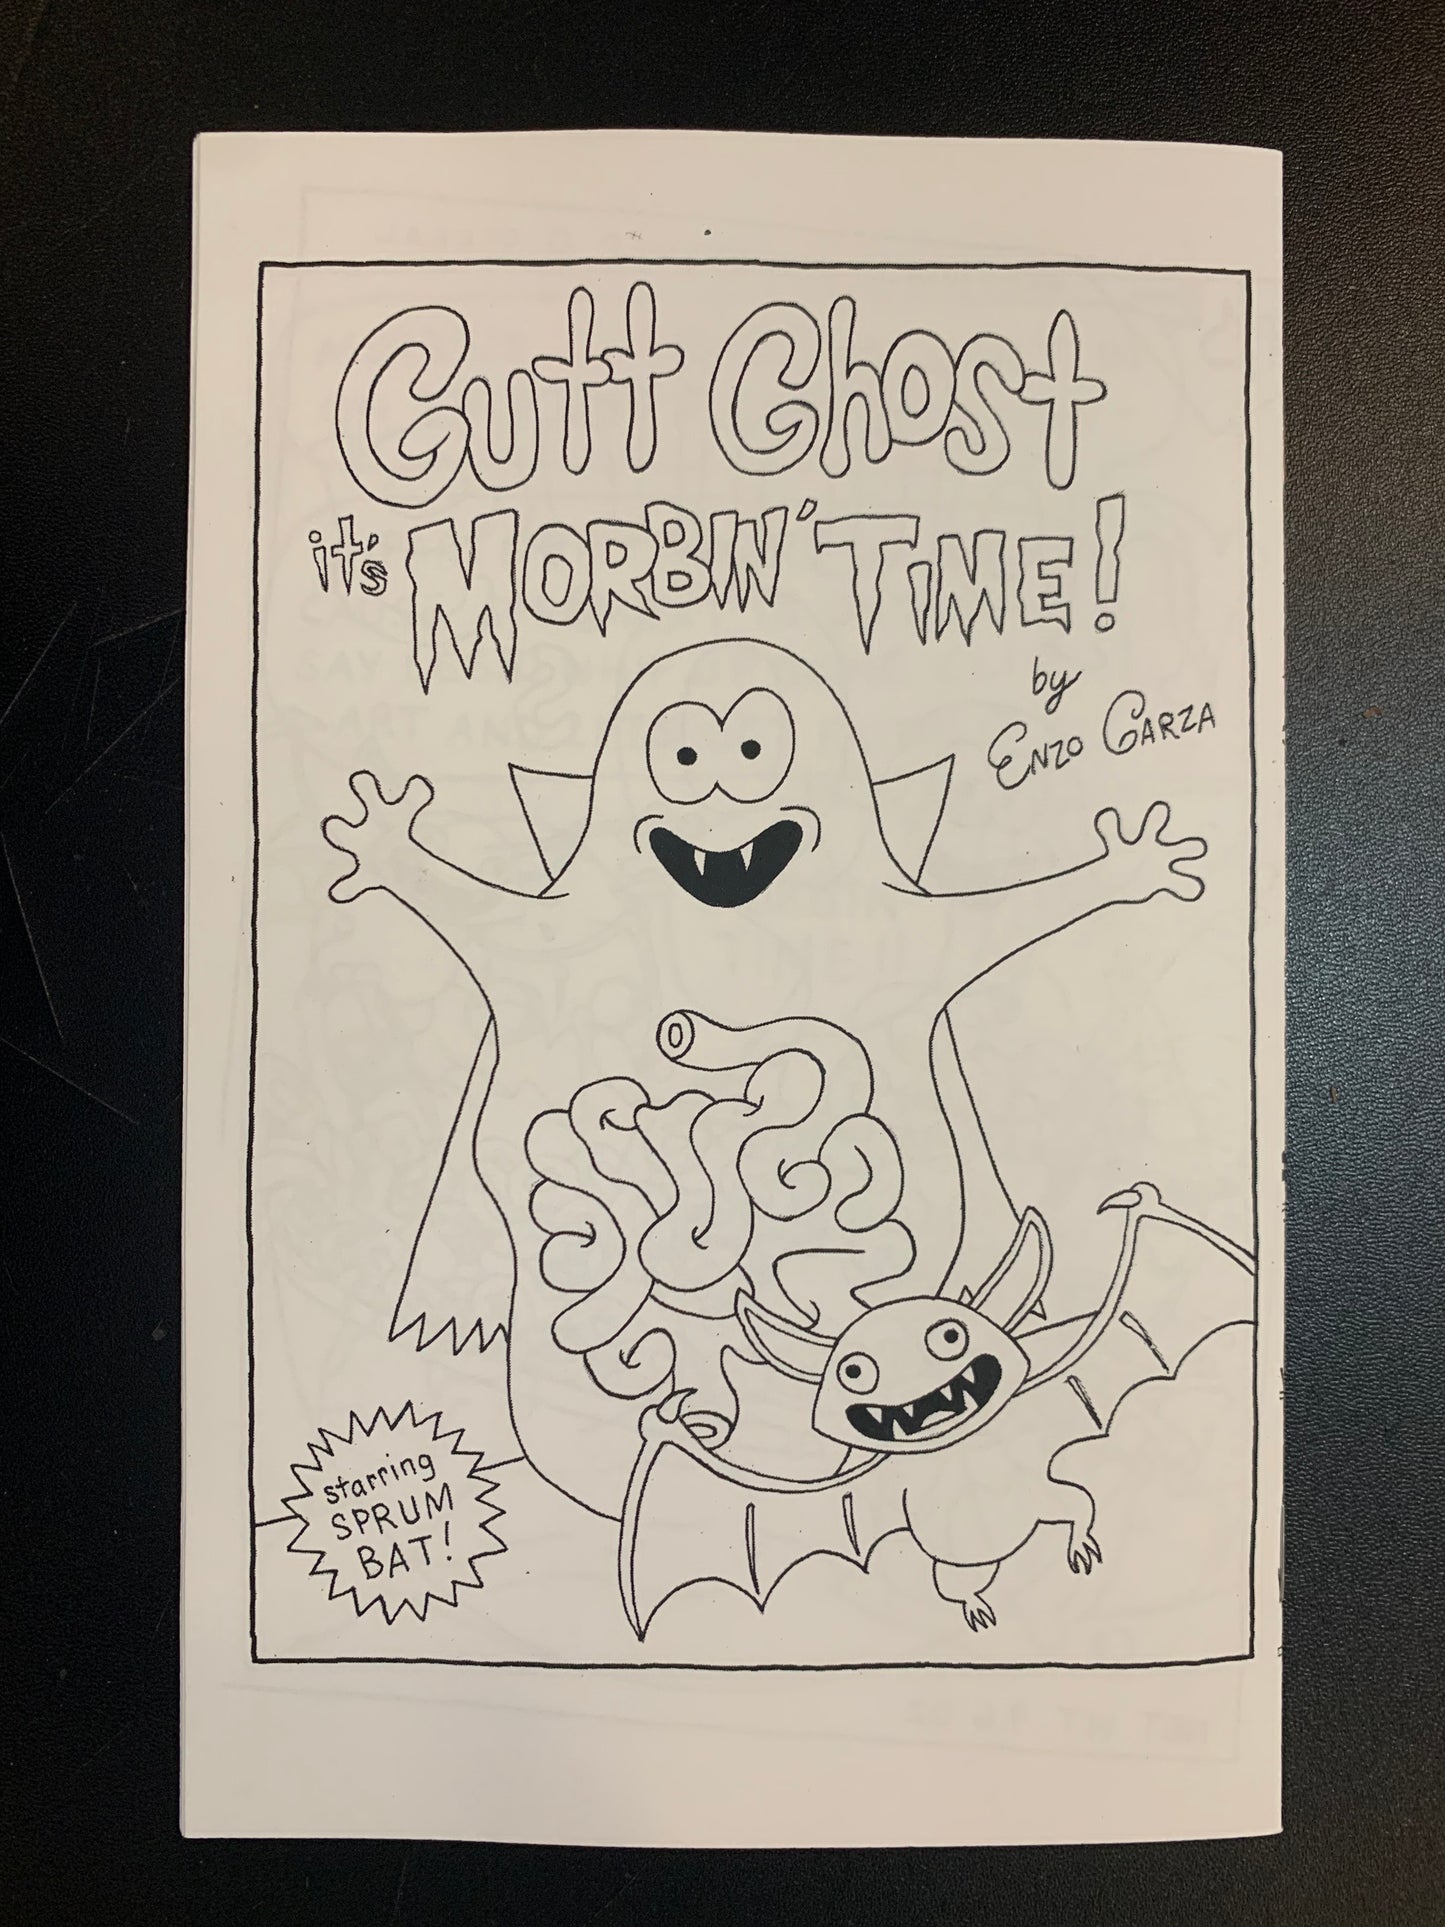 Gutt Ghost: It’s Morbin’ Time